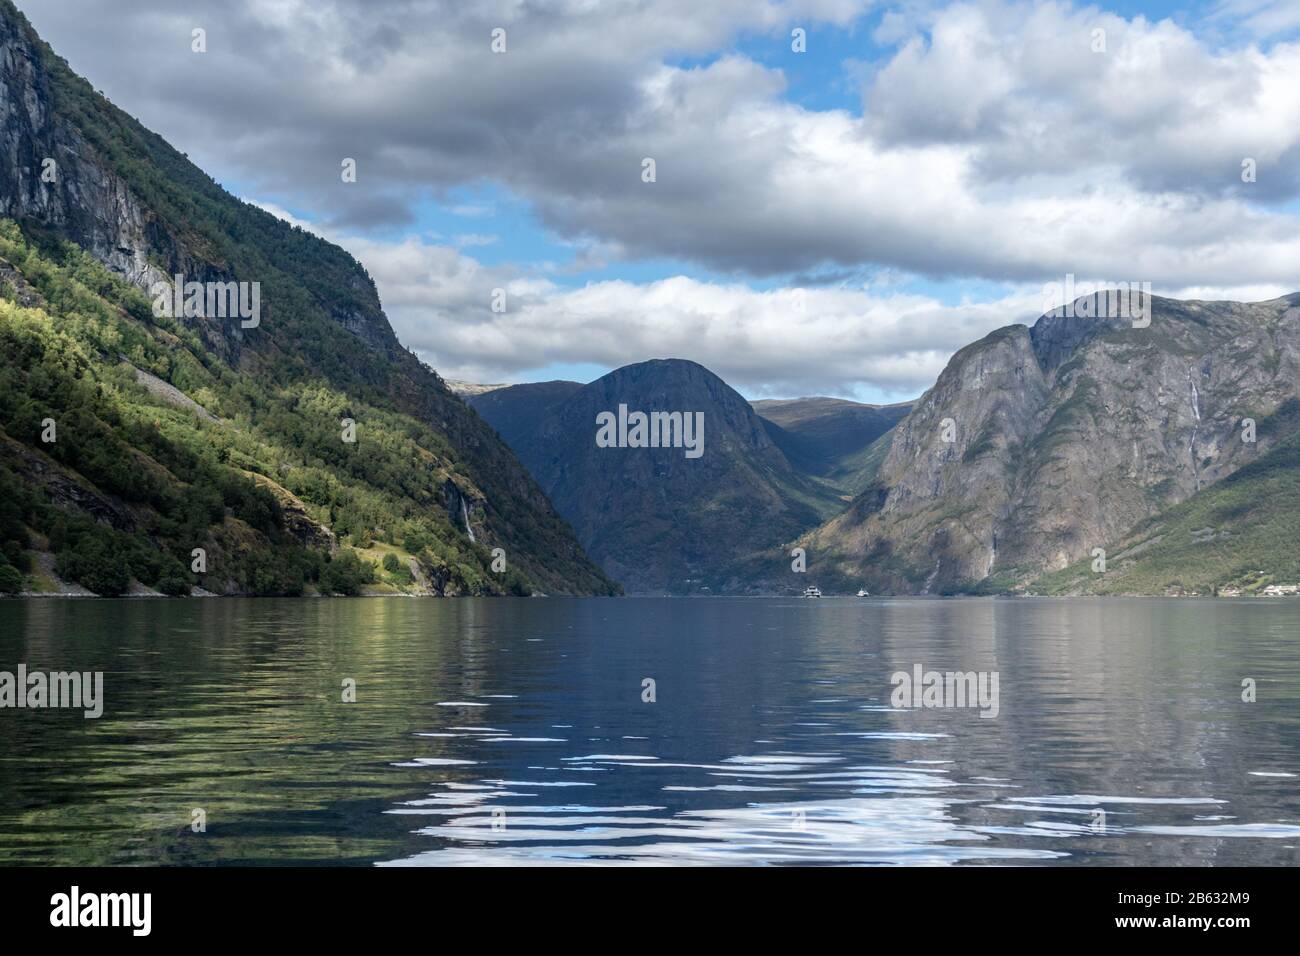 Blick von der Wasseroberfläche mit heller Reflexion. Norwegen Aurlandsfjord-Reise, Kajak-Tour. Natur, Berge, blaue Landschaft, bewölkte epische Aussicht. Stockfoto